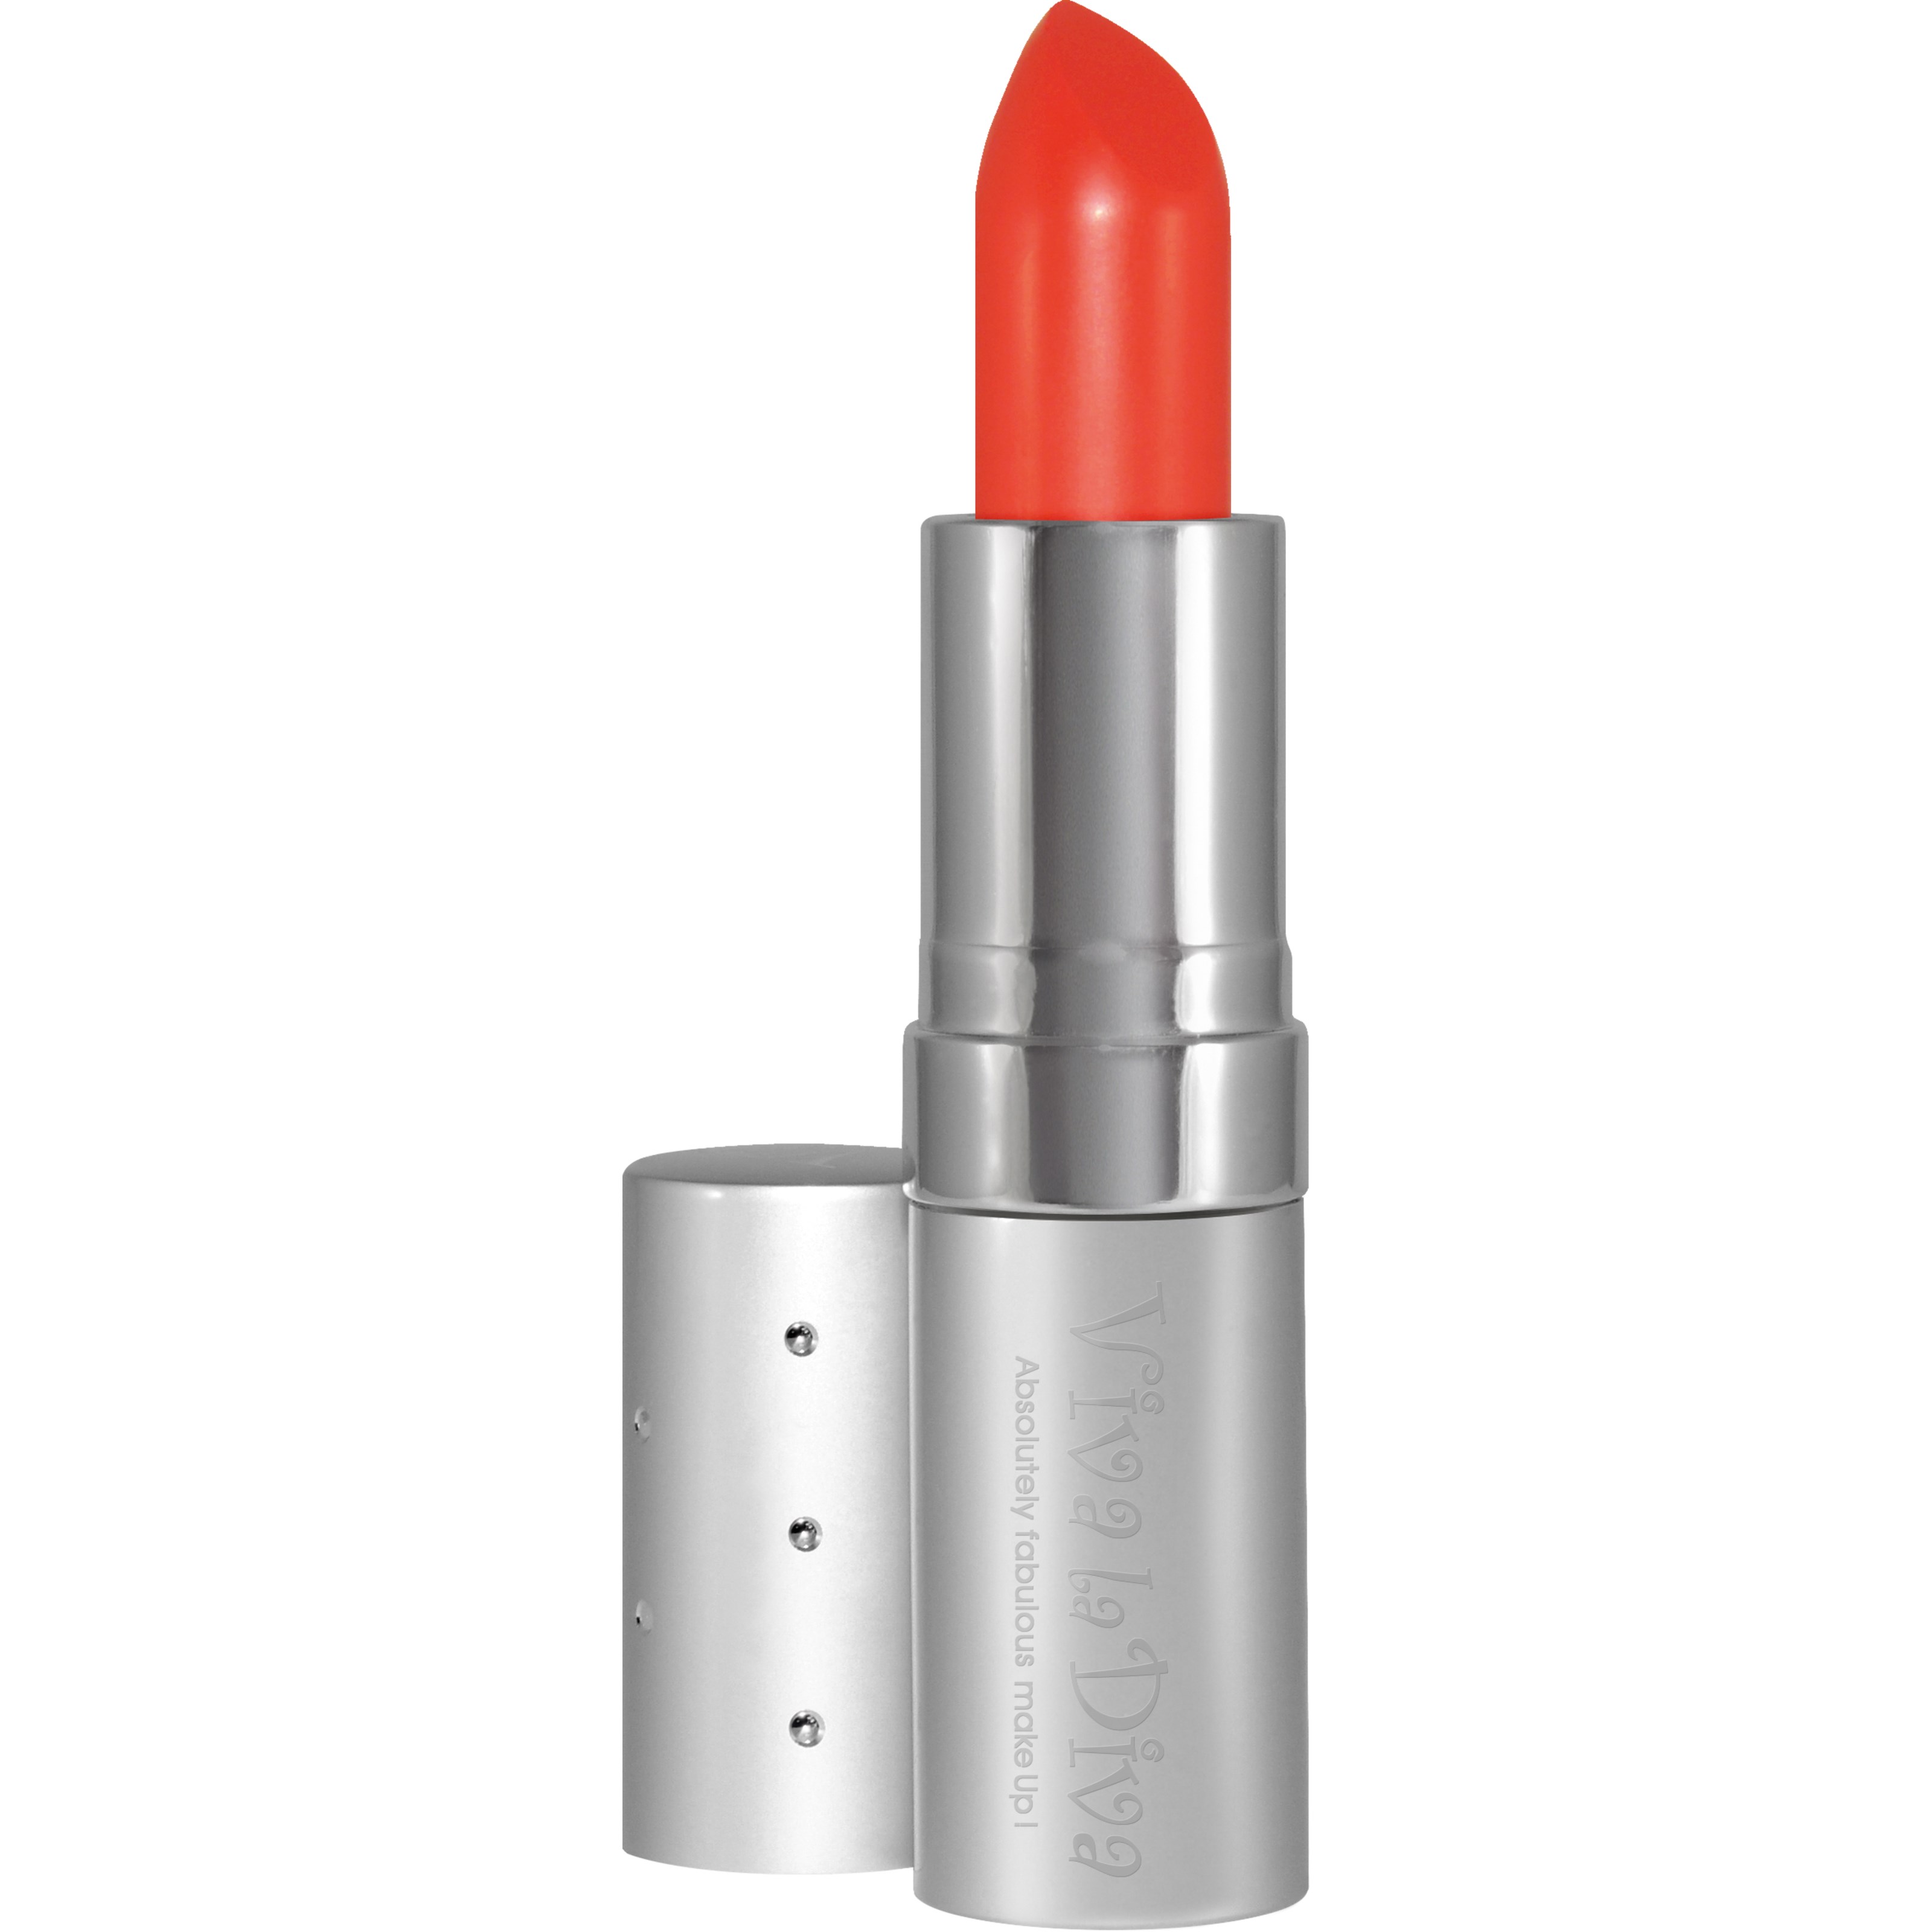 Viva la Diva Lipstick Creme Finish Hot Orange Coral 85 Cream Cora